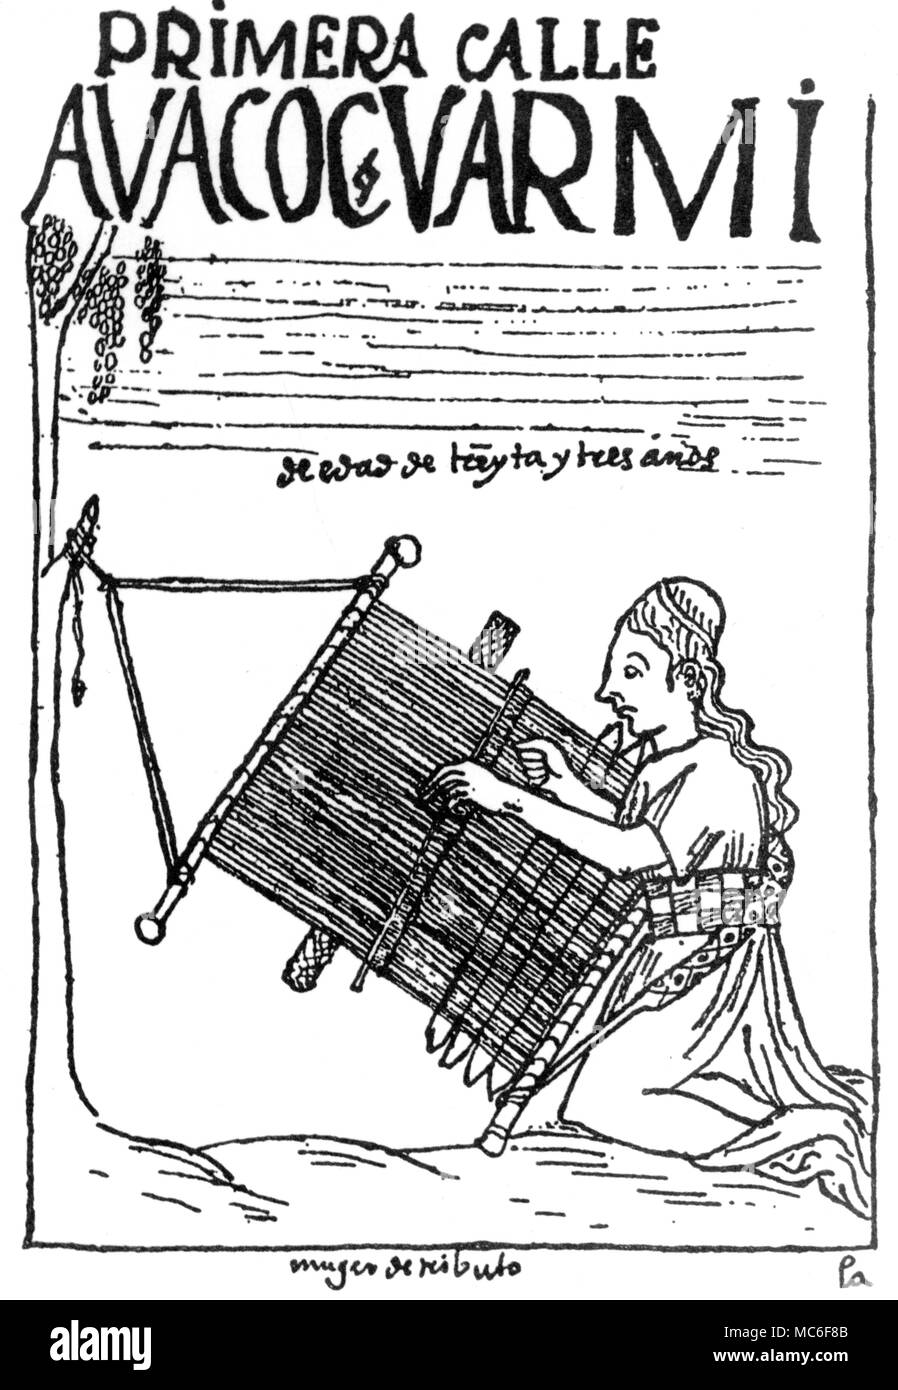 Inca mit traditionellen Webstuhl. Illustration, der um 1600 aus der Chronik von Felipe Guamán Poma de Ayala. Ayala sagte ein Inka von adeliger Abstammung gewesen zu sein. Stockfoto